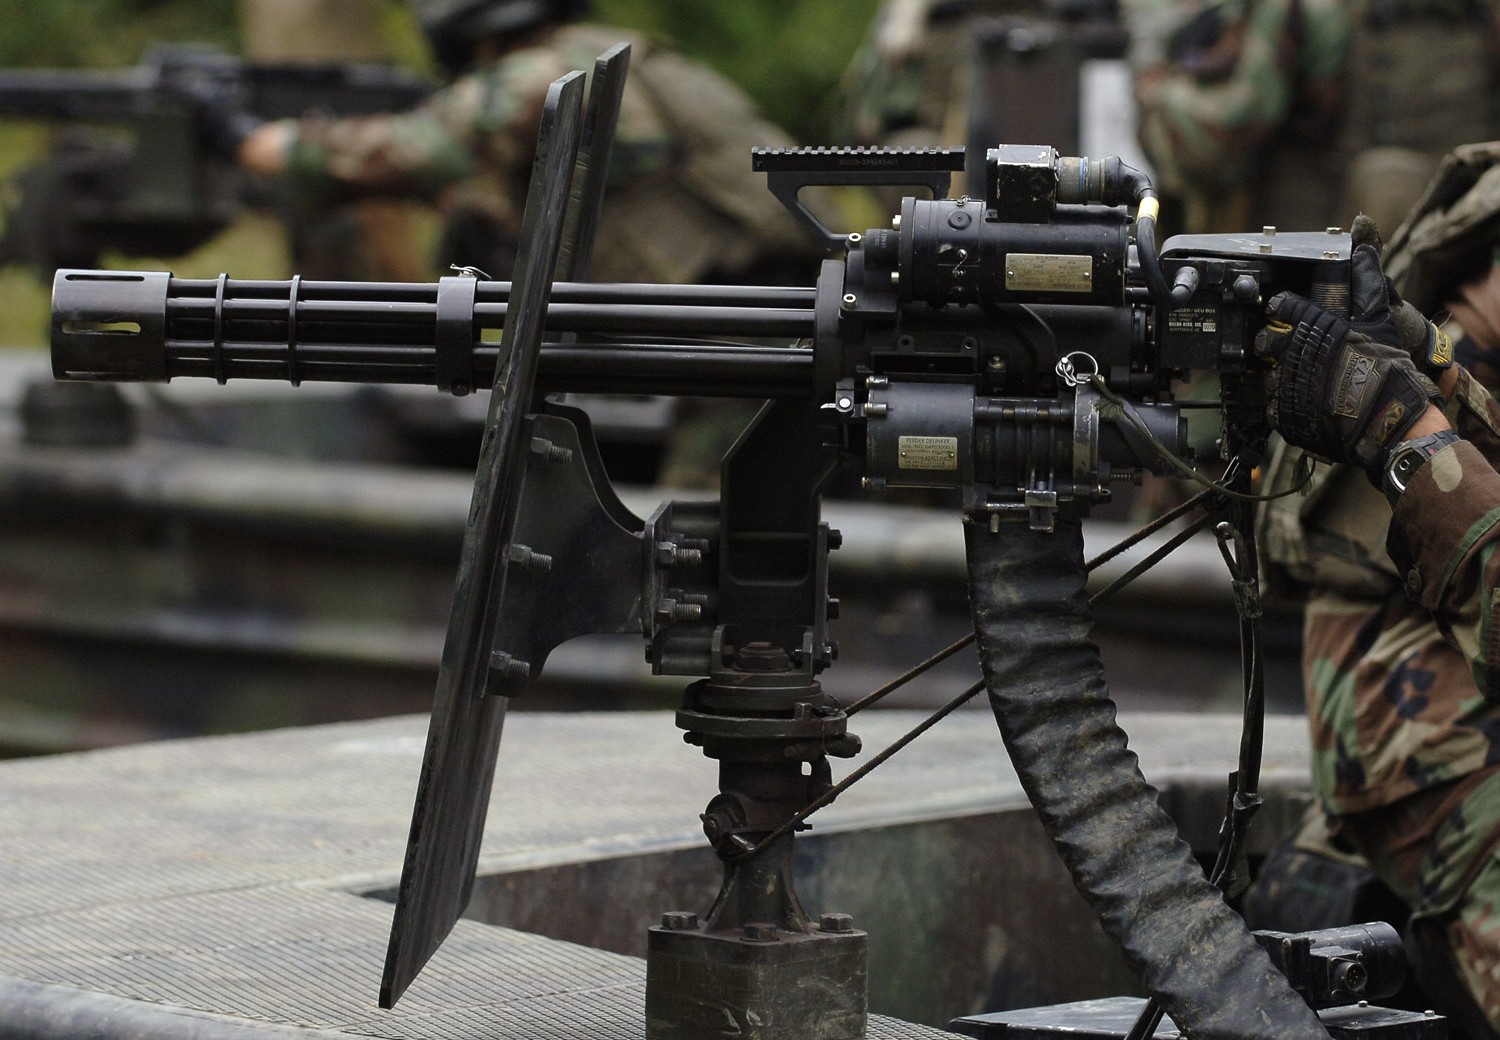 m134 rotary machine gun system six barreled minigun gatling 7,62mm gau-17